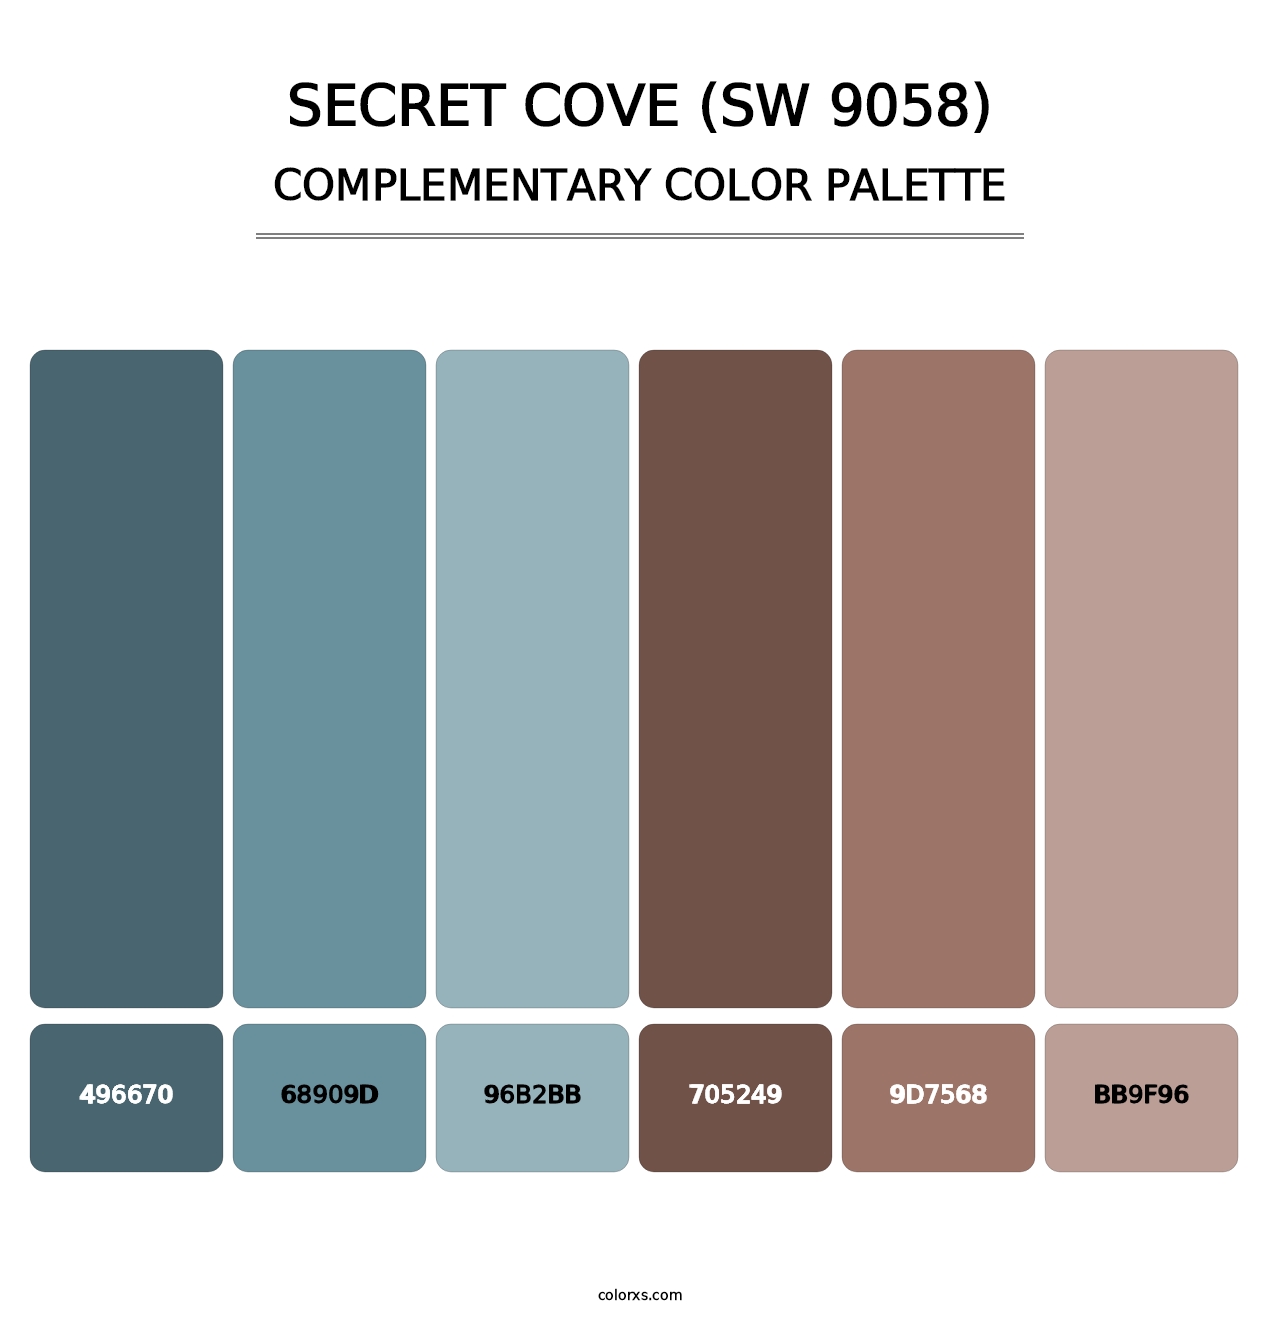 Secret Cove (SW 9058) - Complementary Color Palette